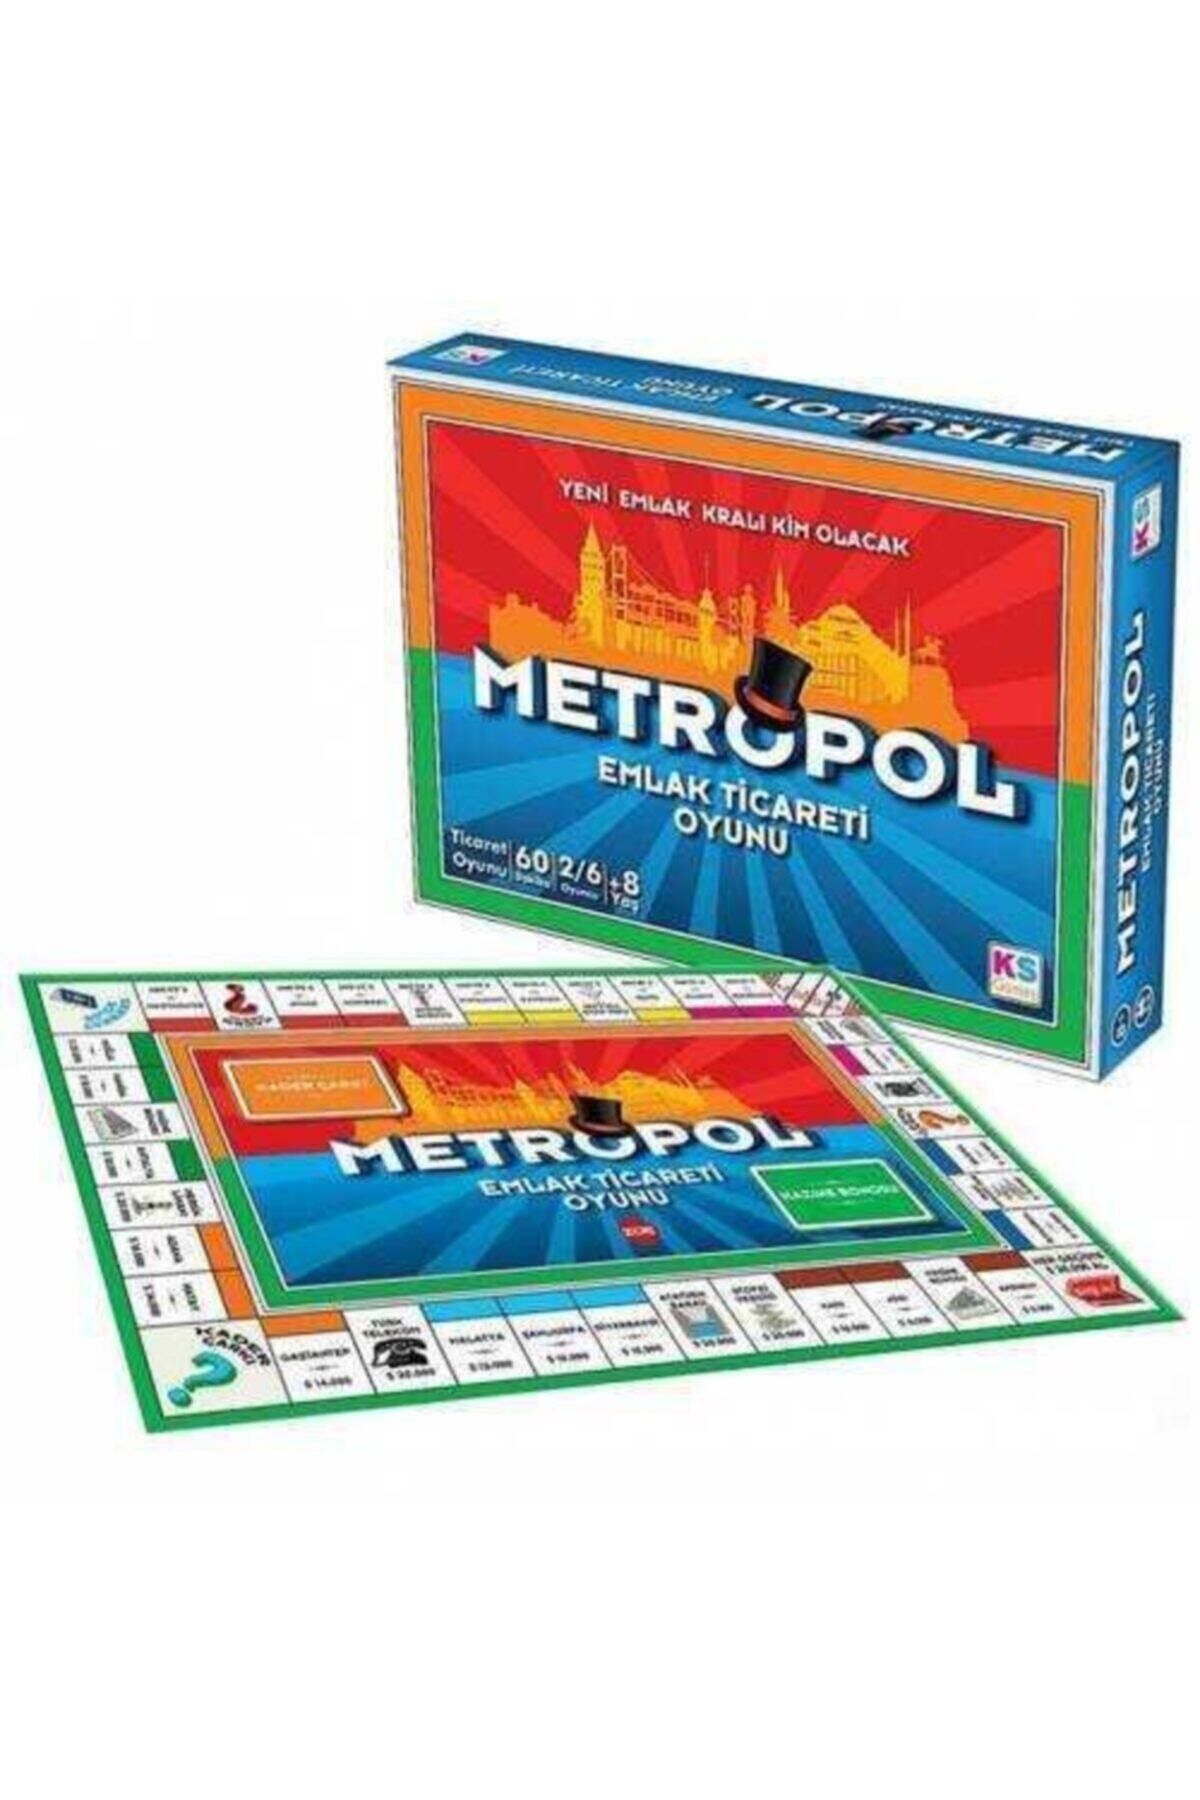 Ks Games Metropol Emlak Ticareti Oyunu (yeni Kutu) Orijinal Ürün